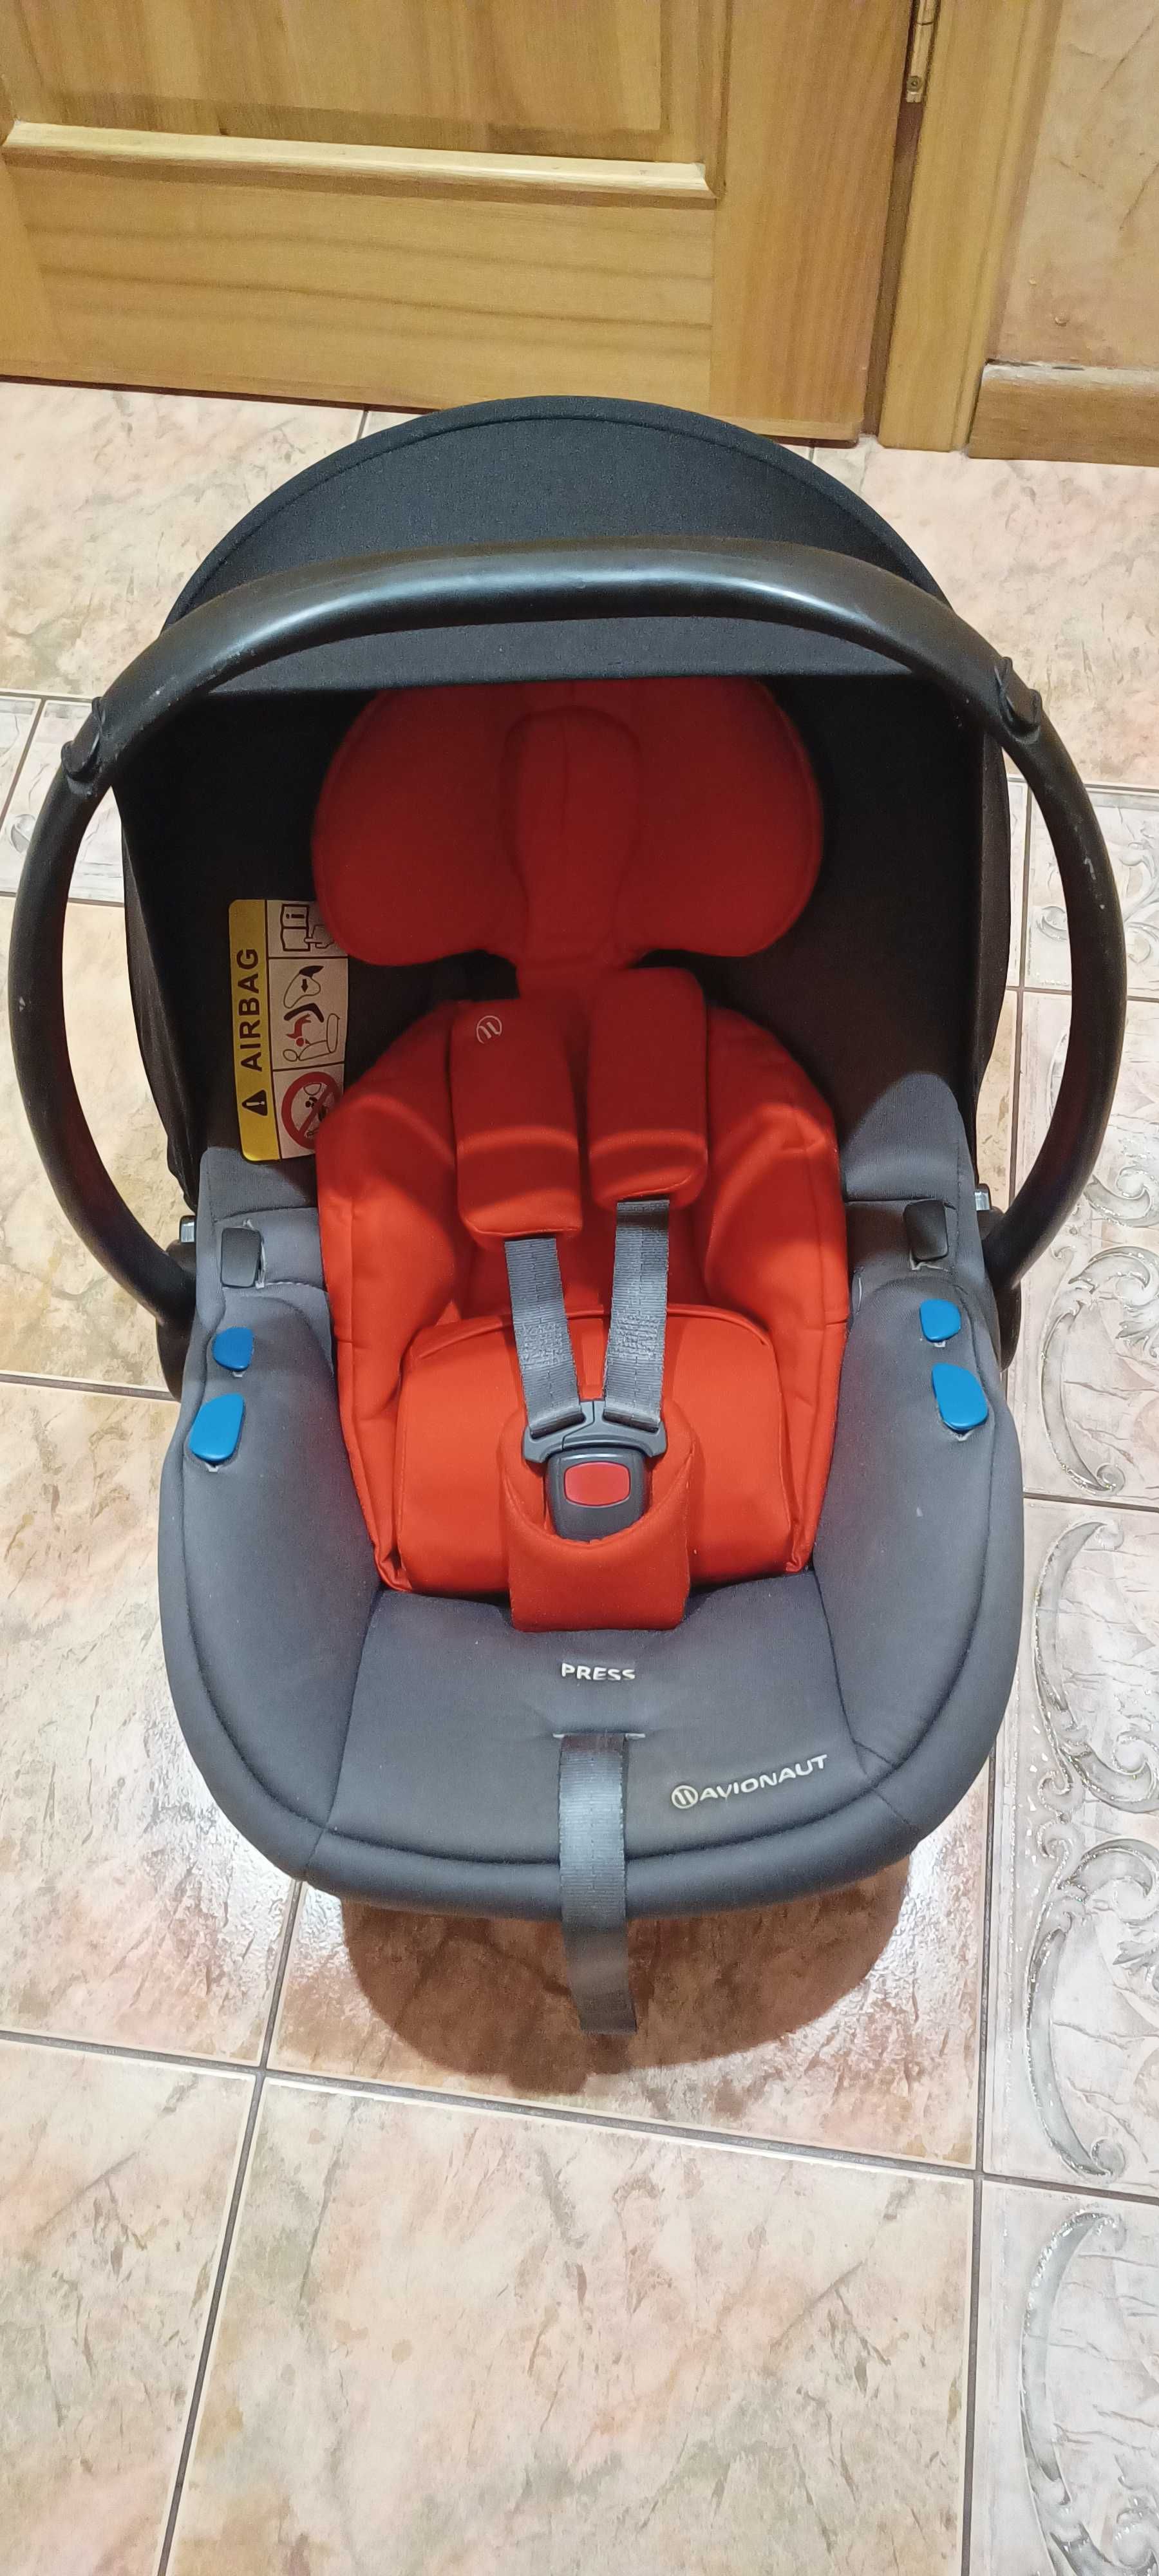 Avionaut pixel fotelik samochodowy dla niemowlaka, dziecka 0-13 kg